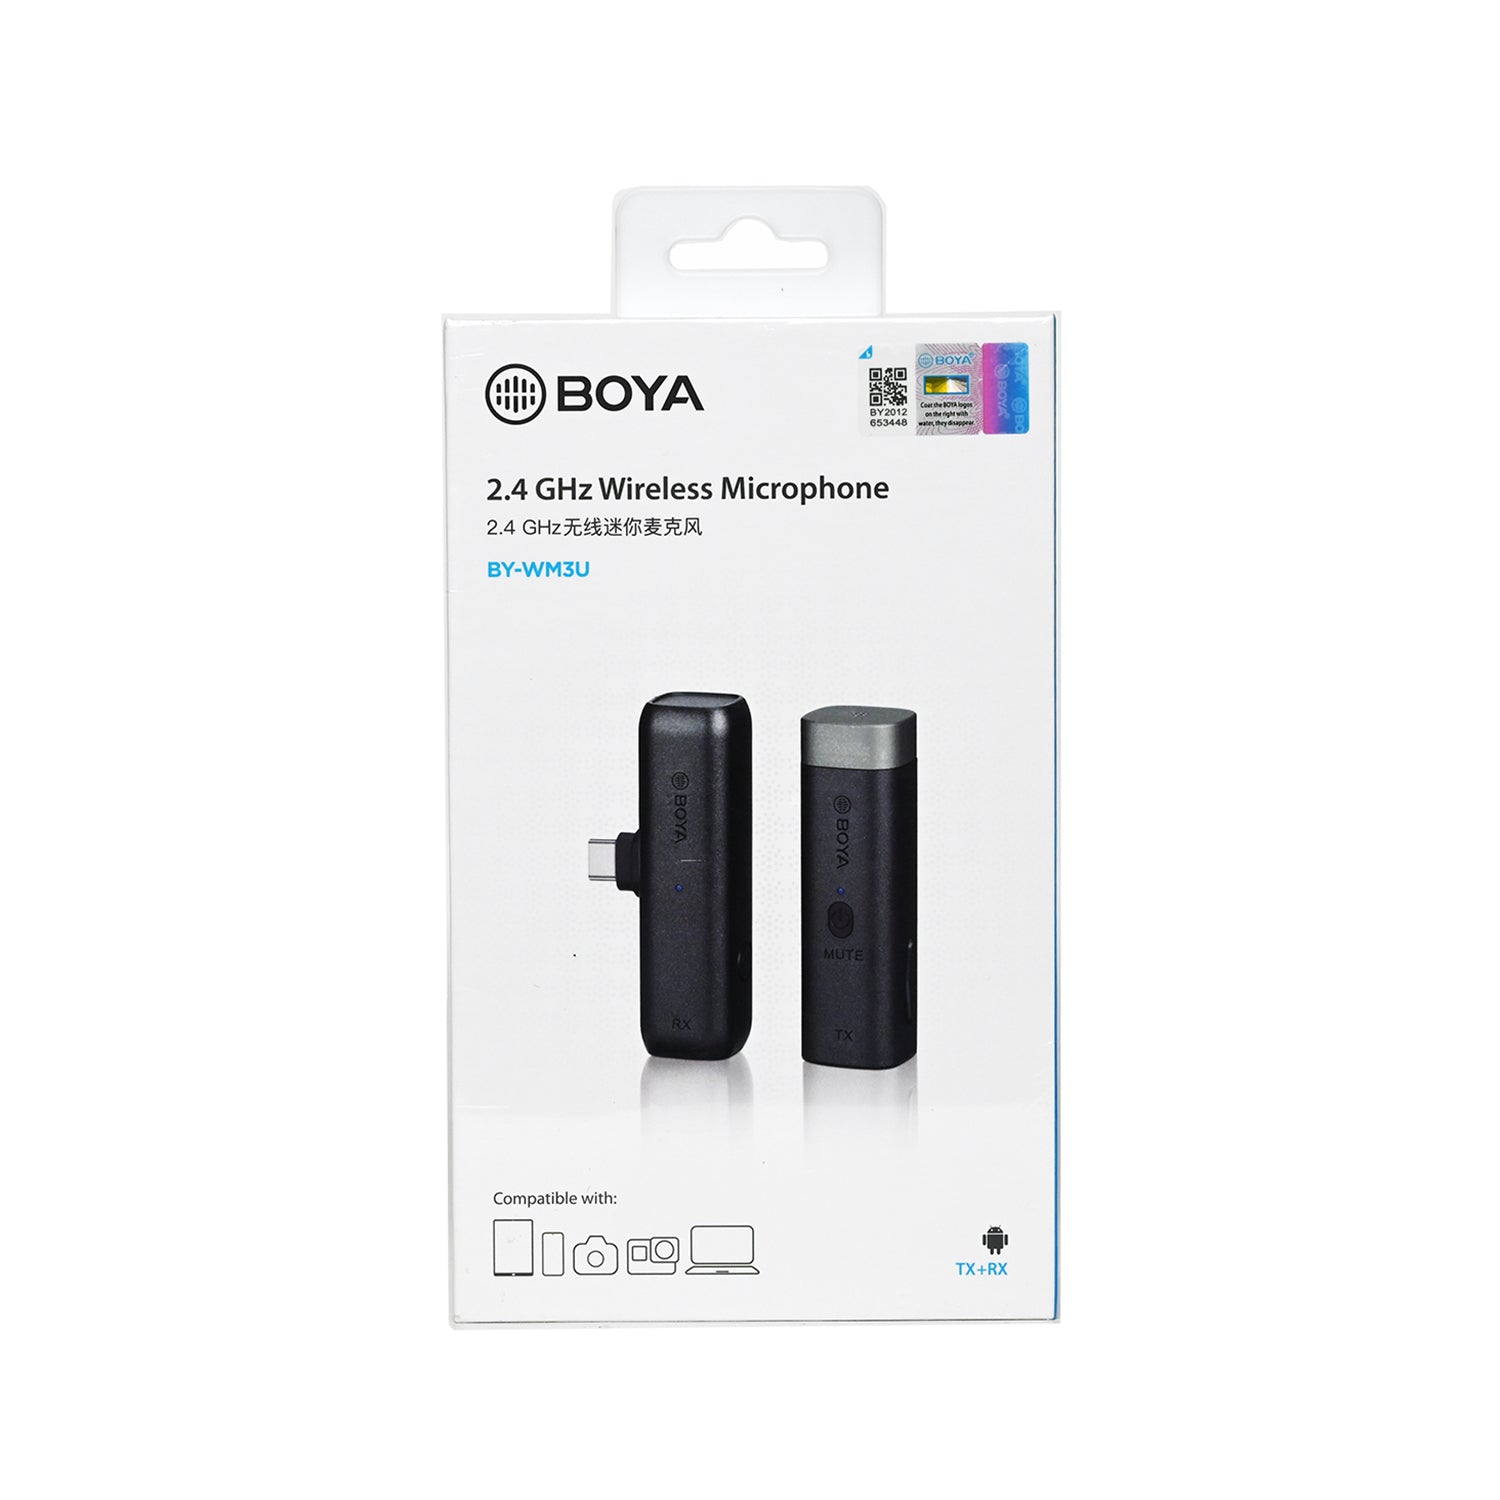 Boya BY-WM3U 2.4GHz Wireless Microphone system